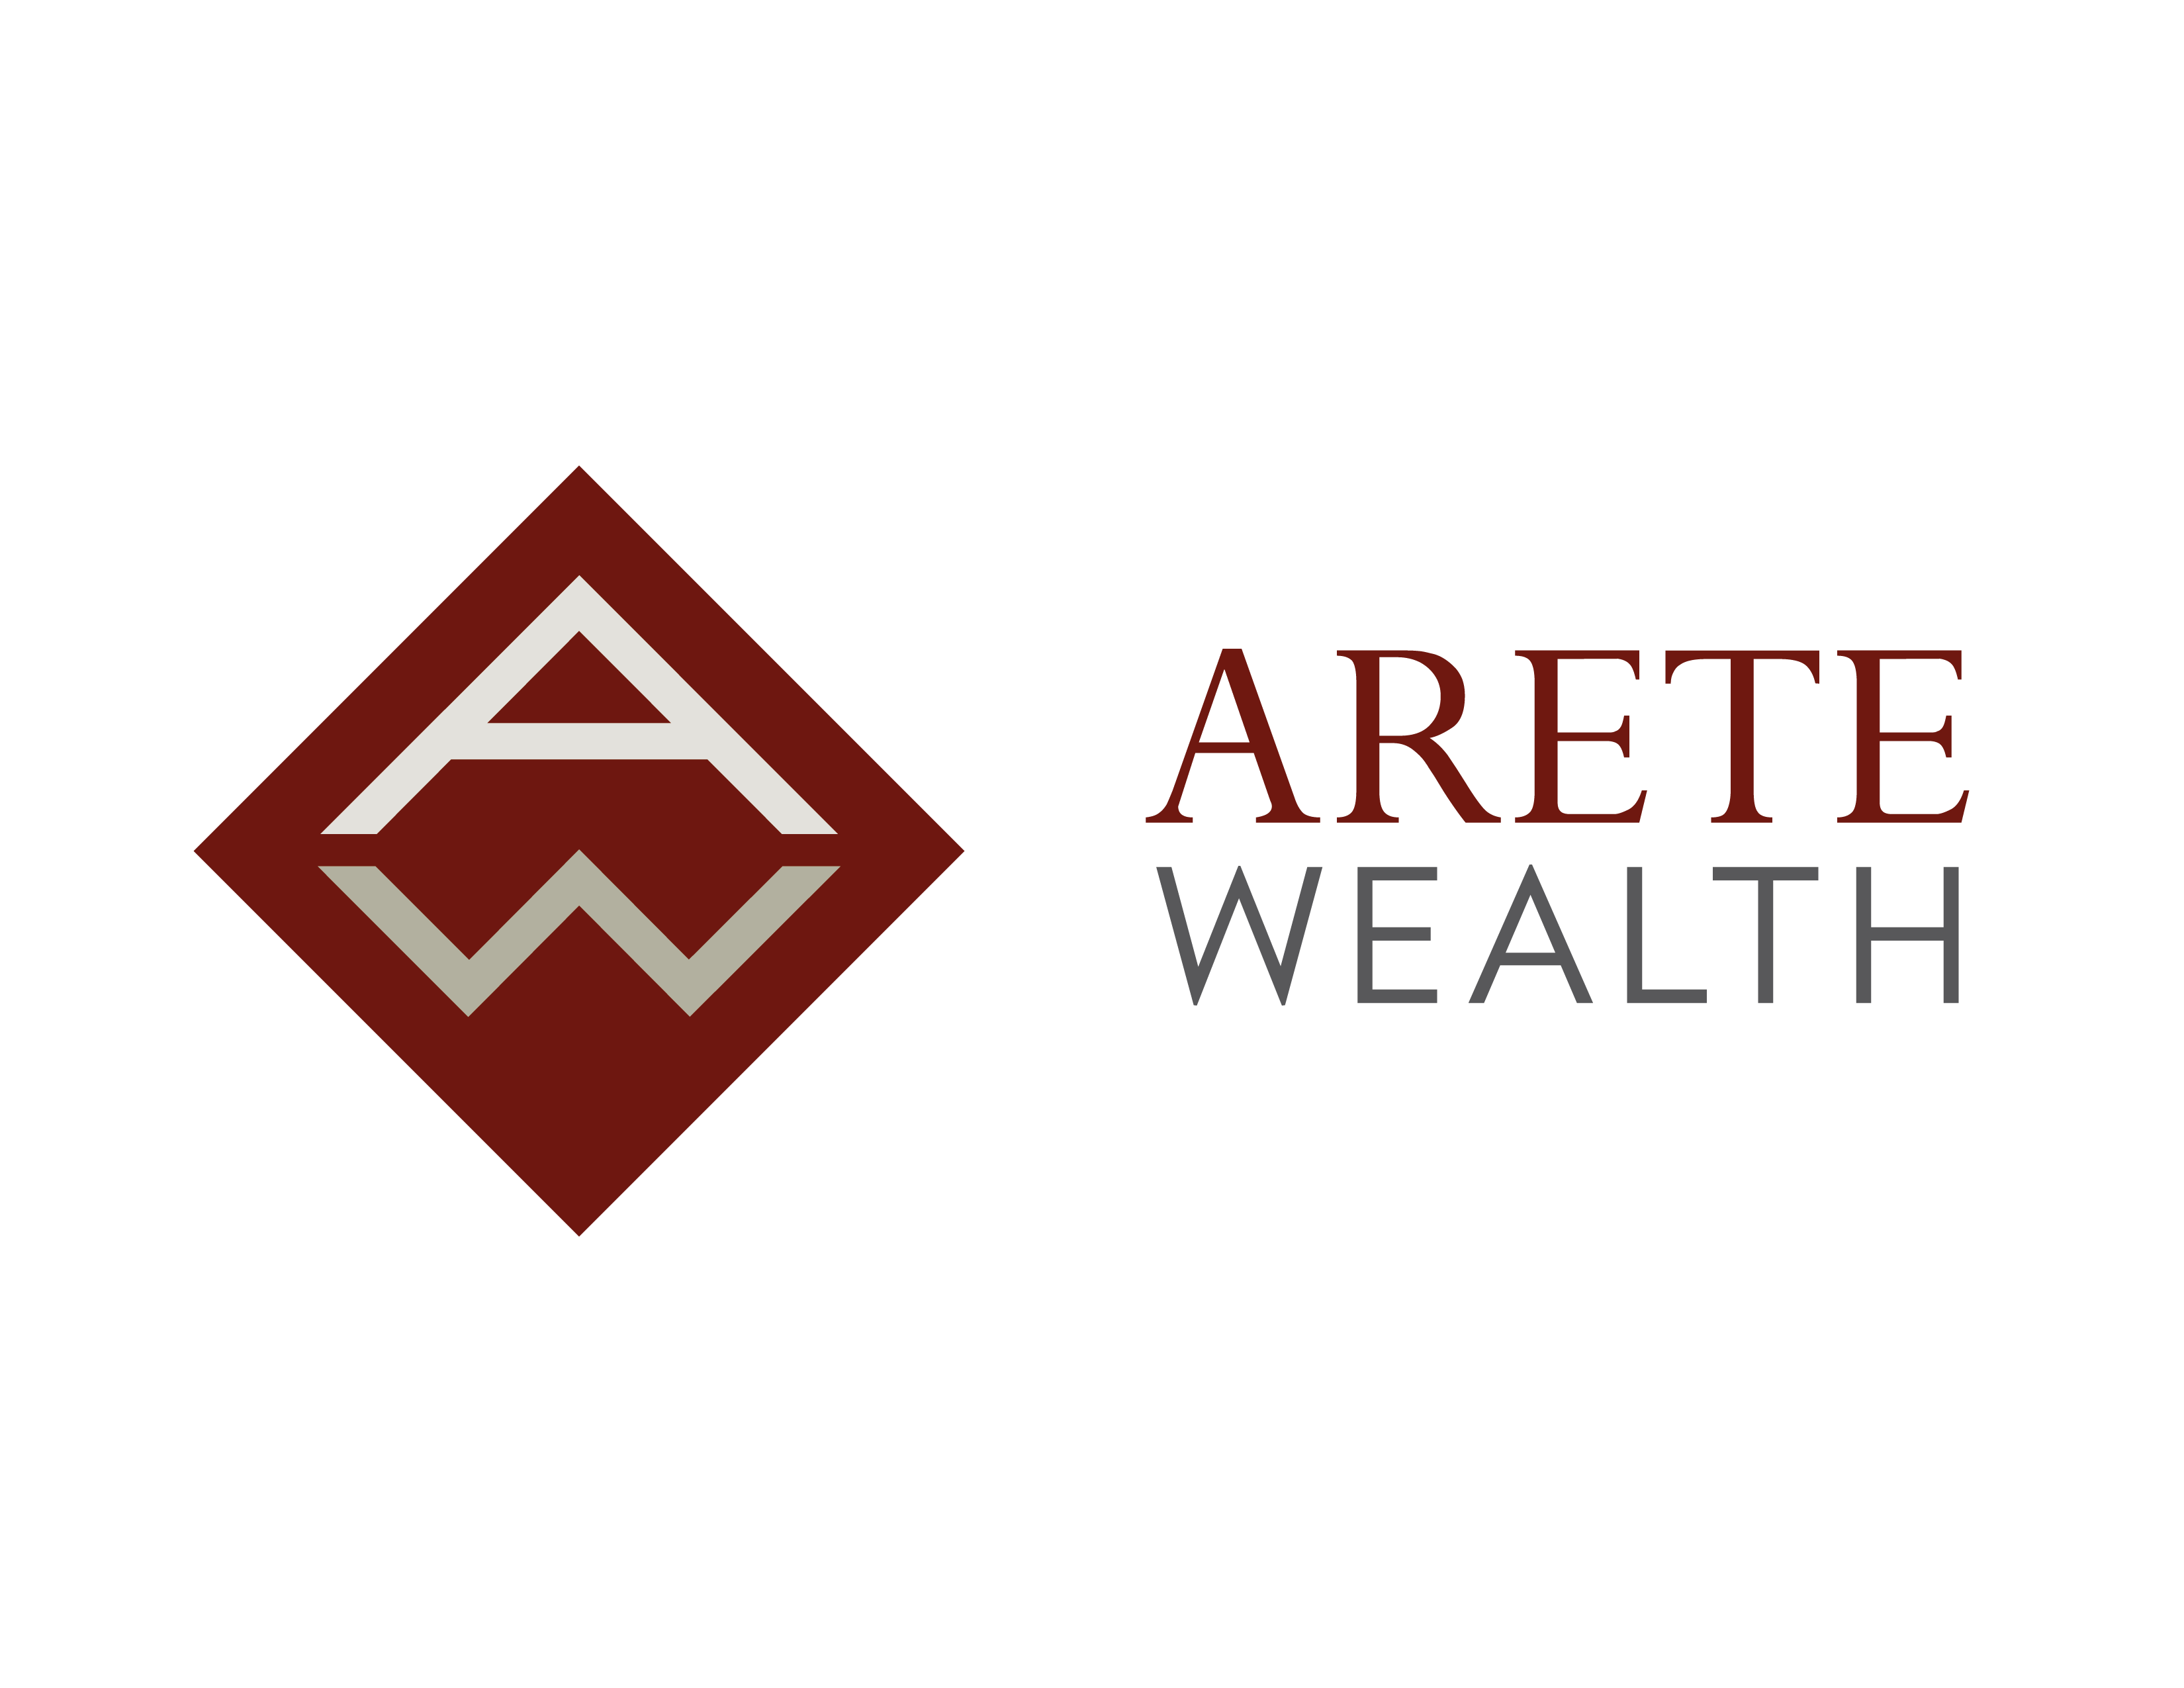 Arete wealth logo